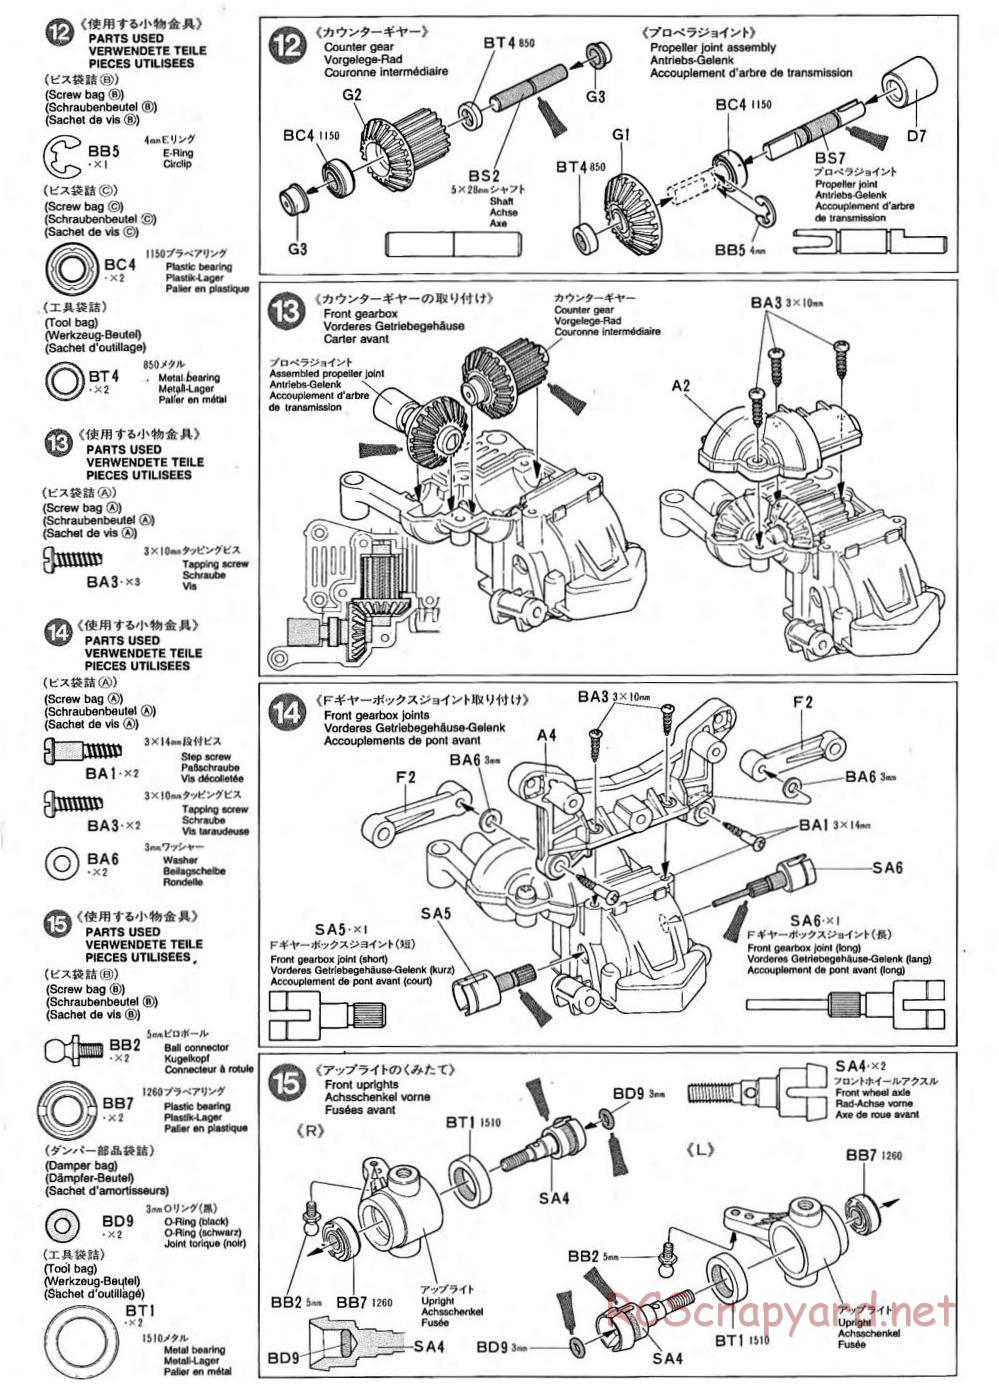 Tamiya - TA-02 Chassis - Manual - Page 5